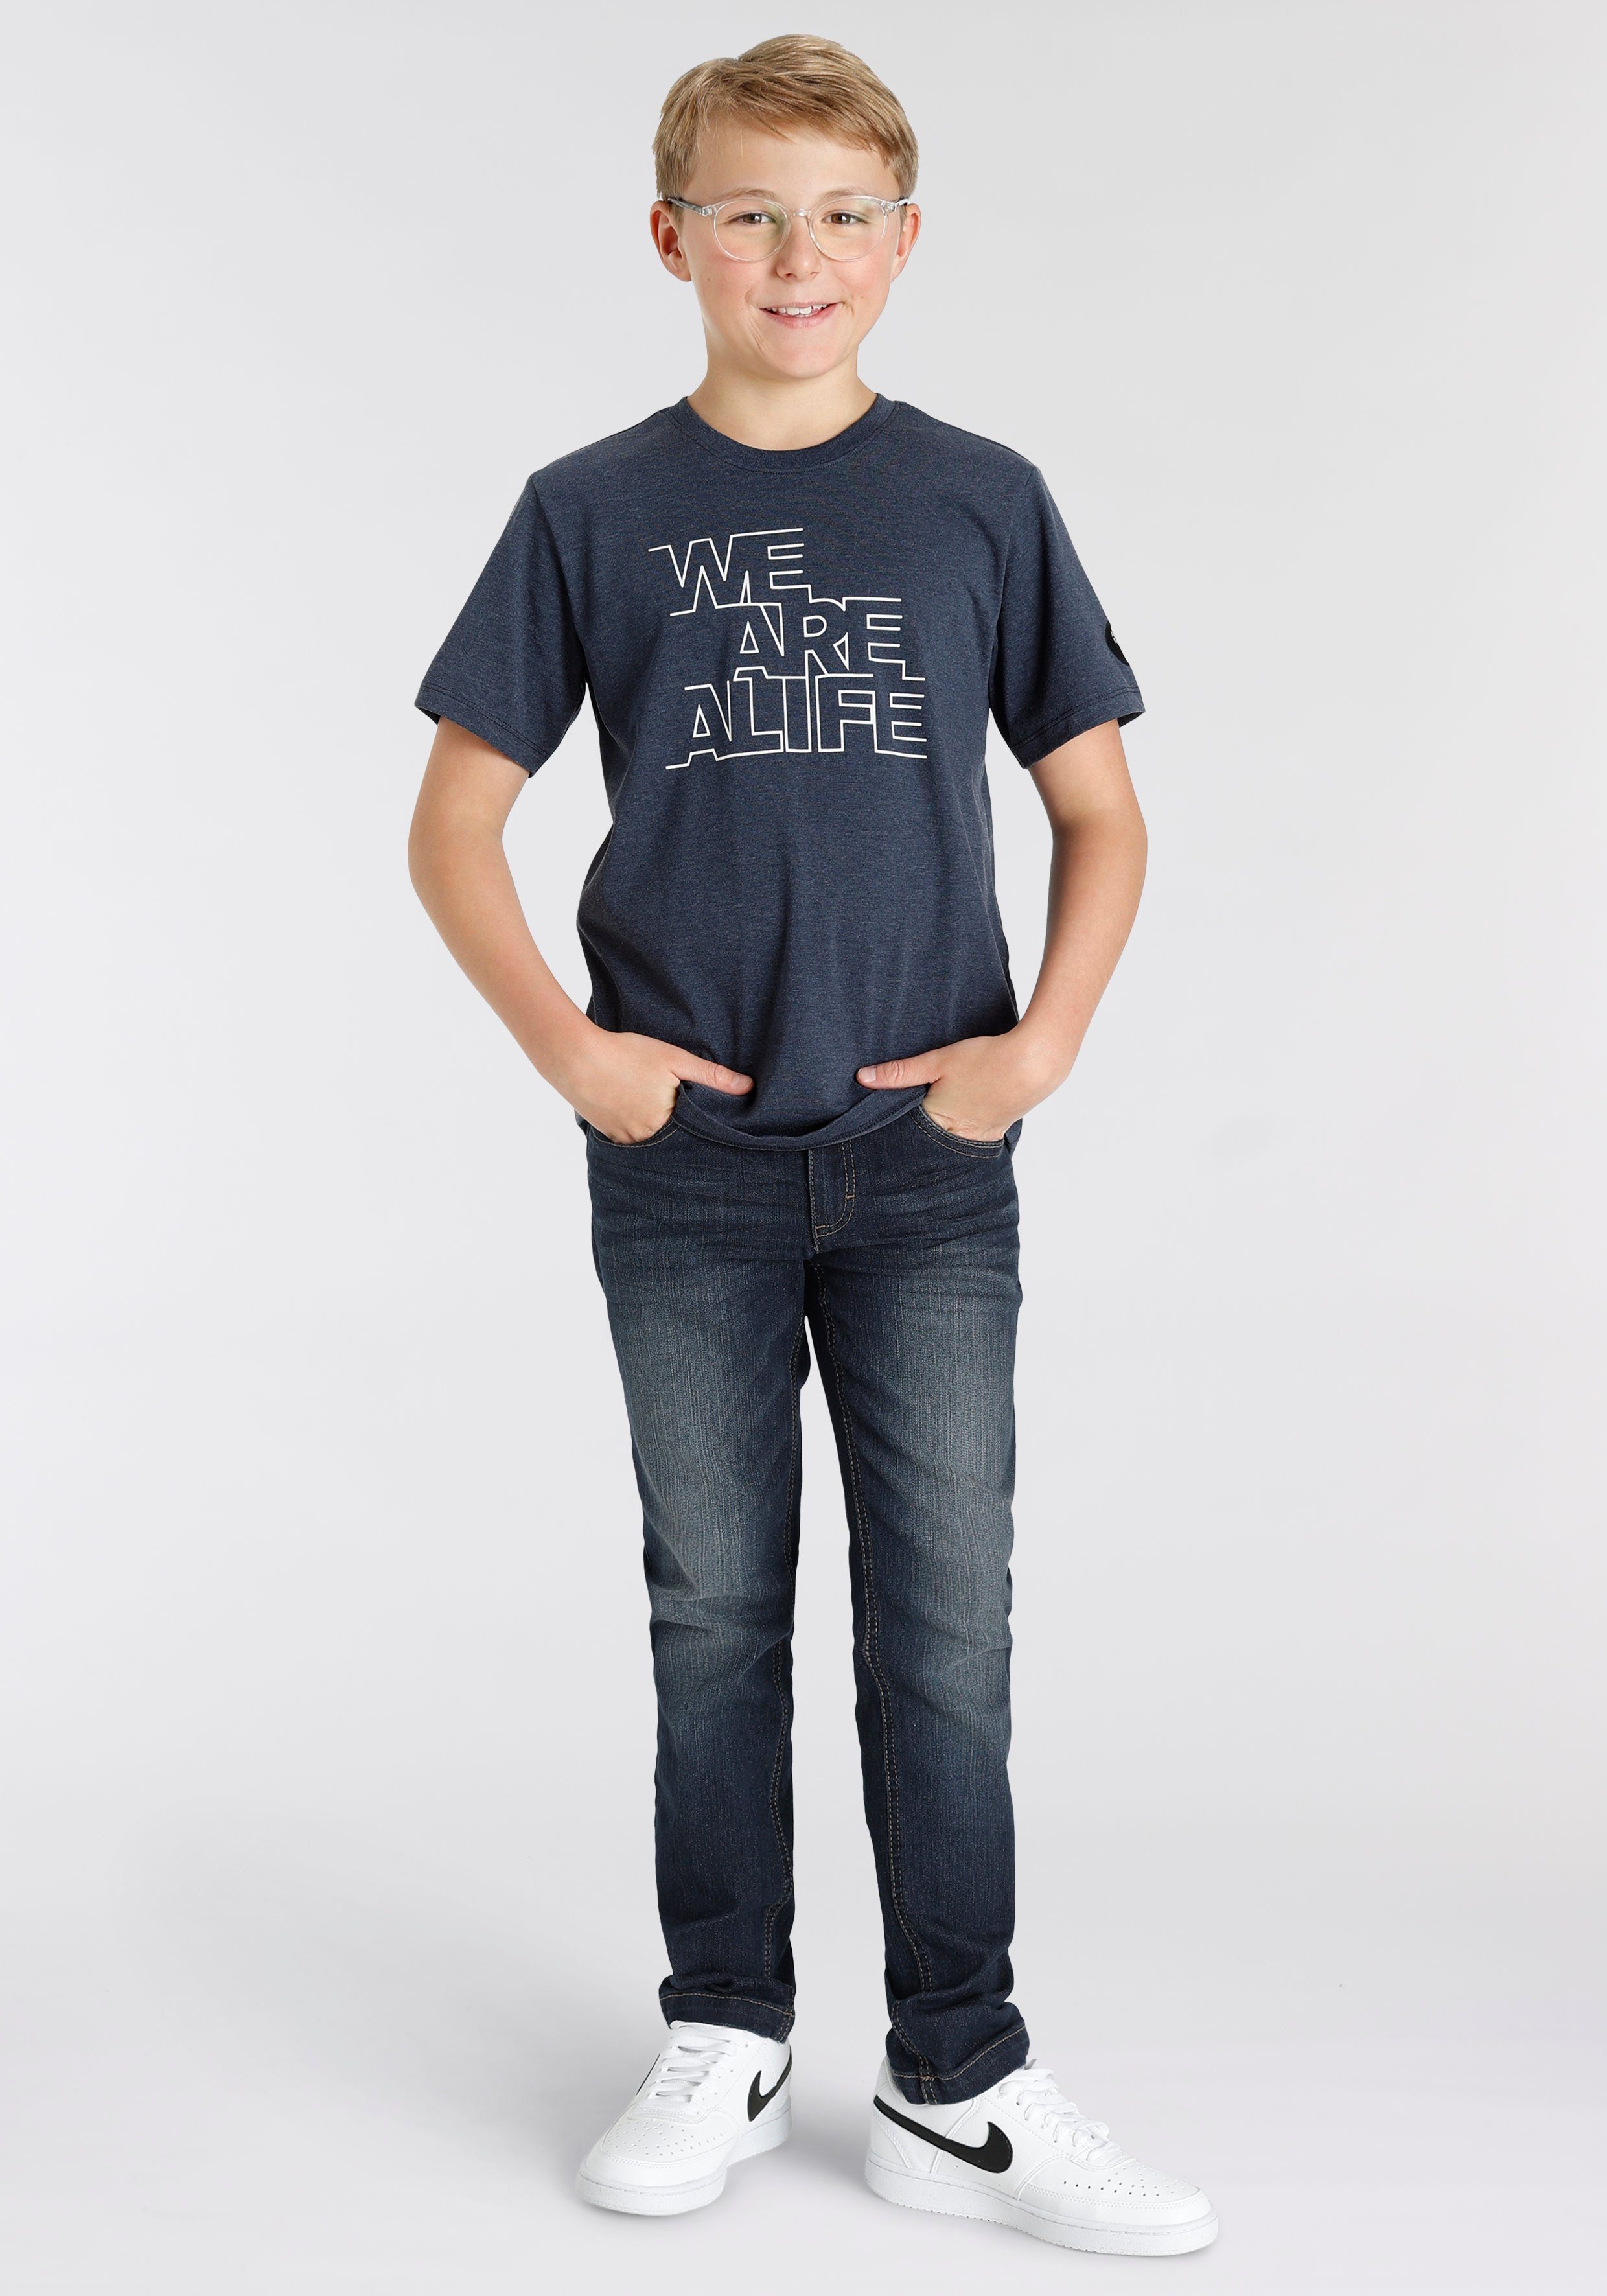 & für Kickin schmale Hosenbund, mit Logo-Print Jungen Straight-Jeans im Form Alife